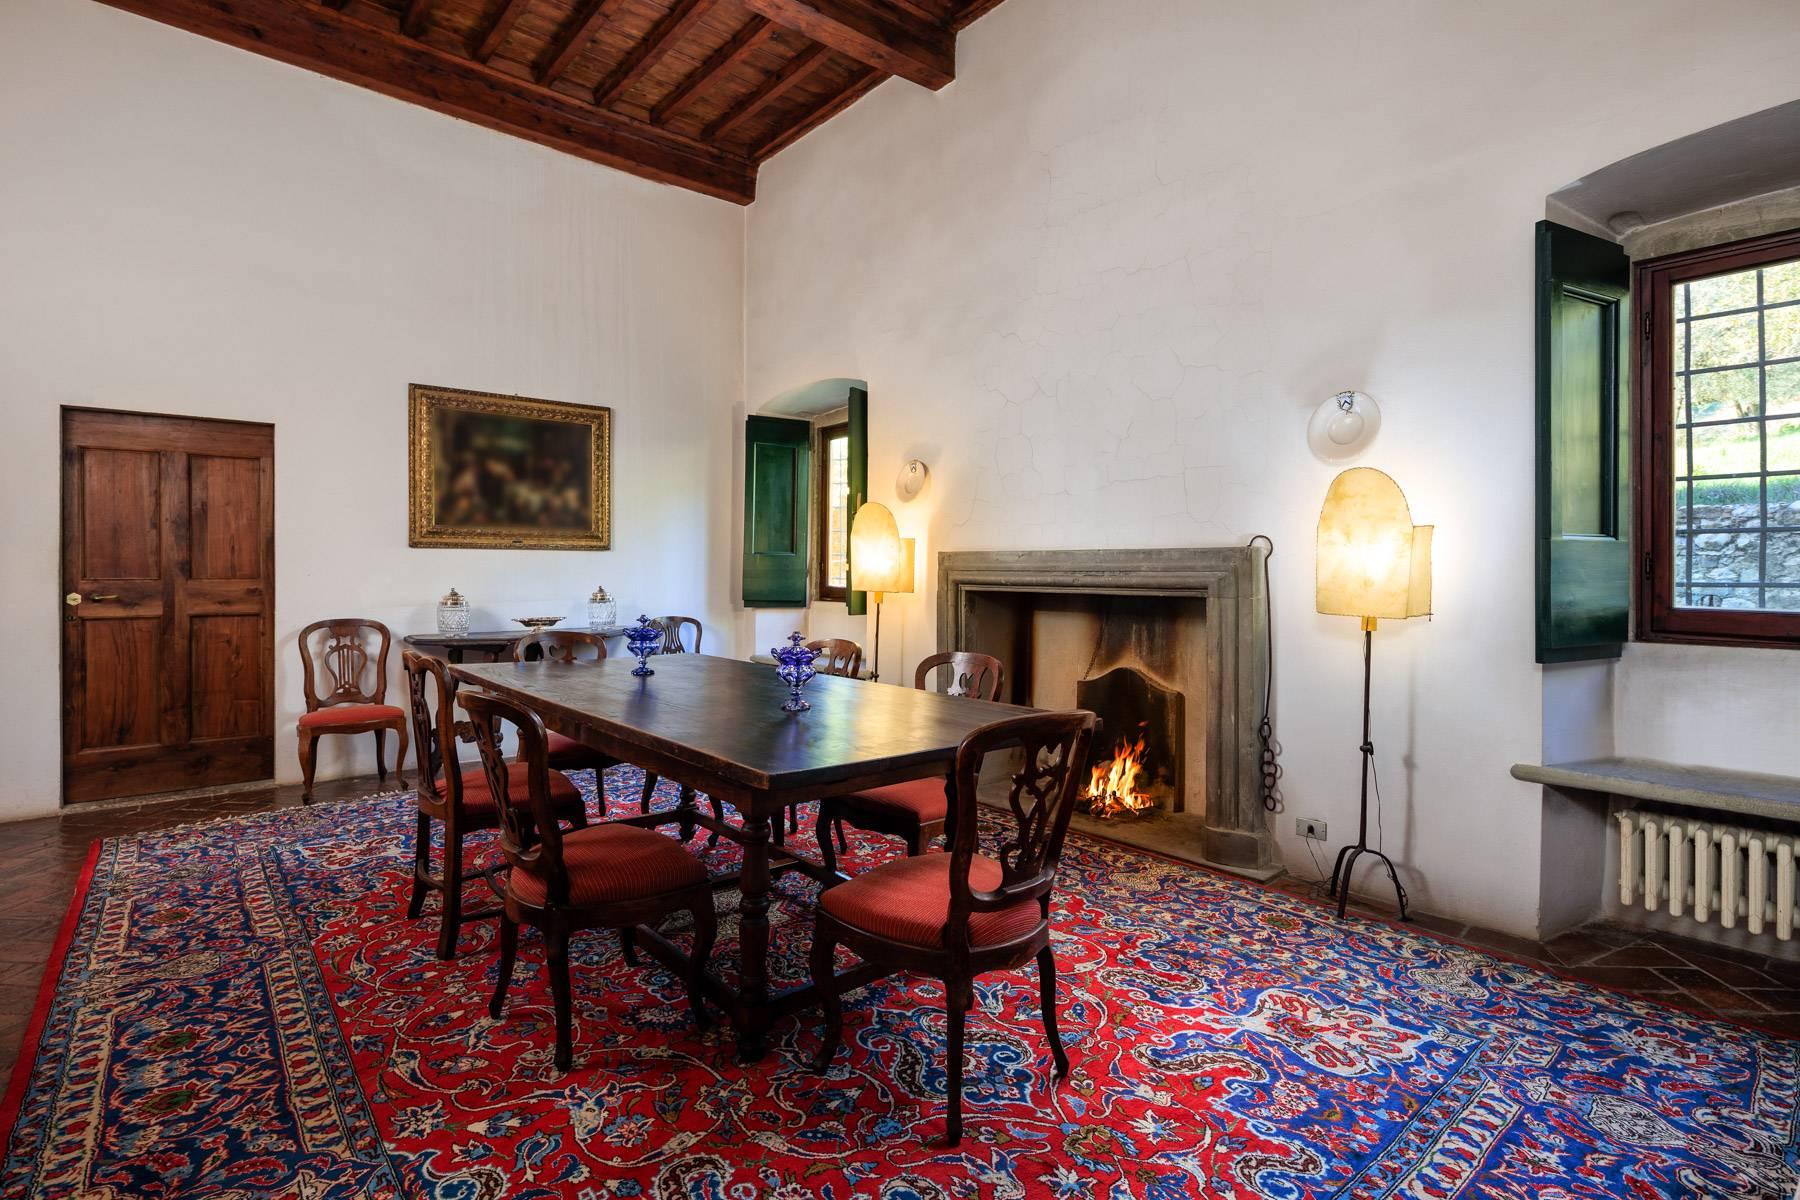 Großes historisches Herrenhaus im renommiertesten Ölgebiet in der Nähe von Florenz - 9